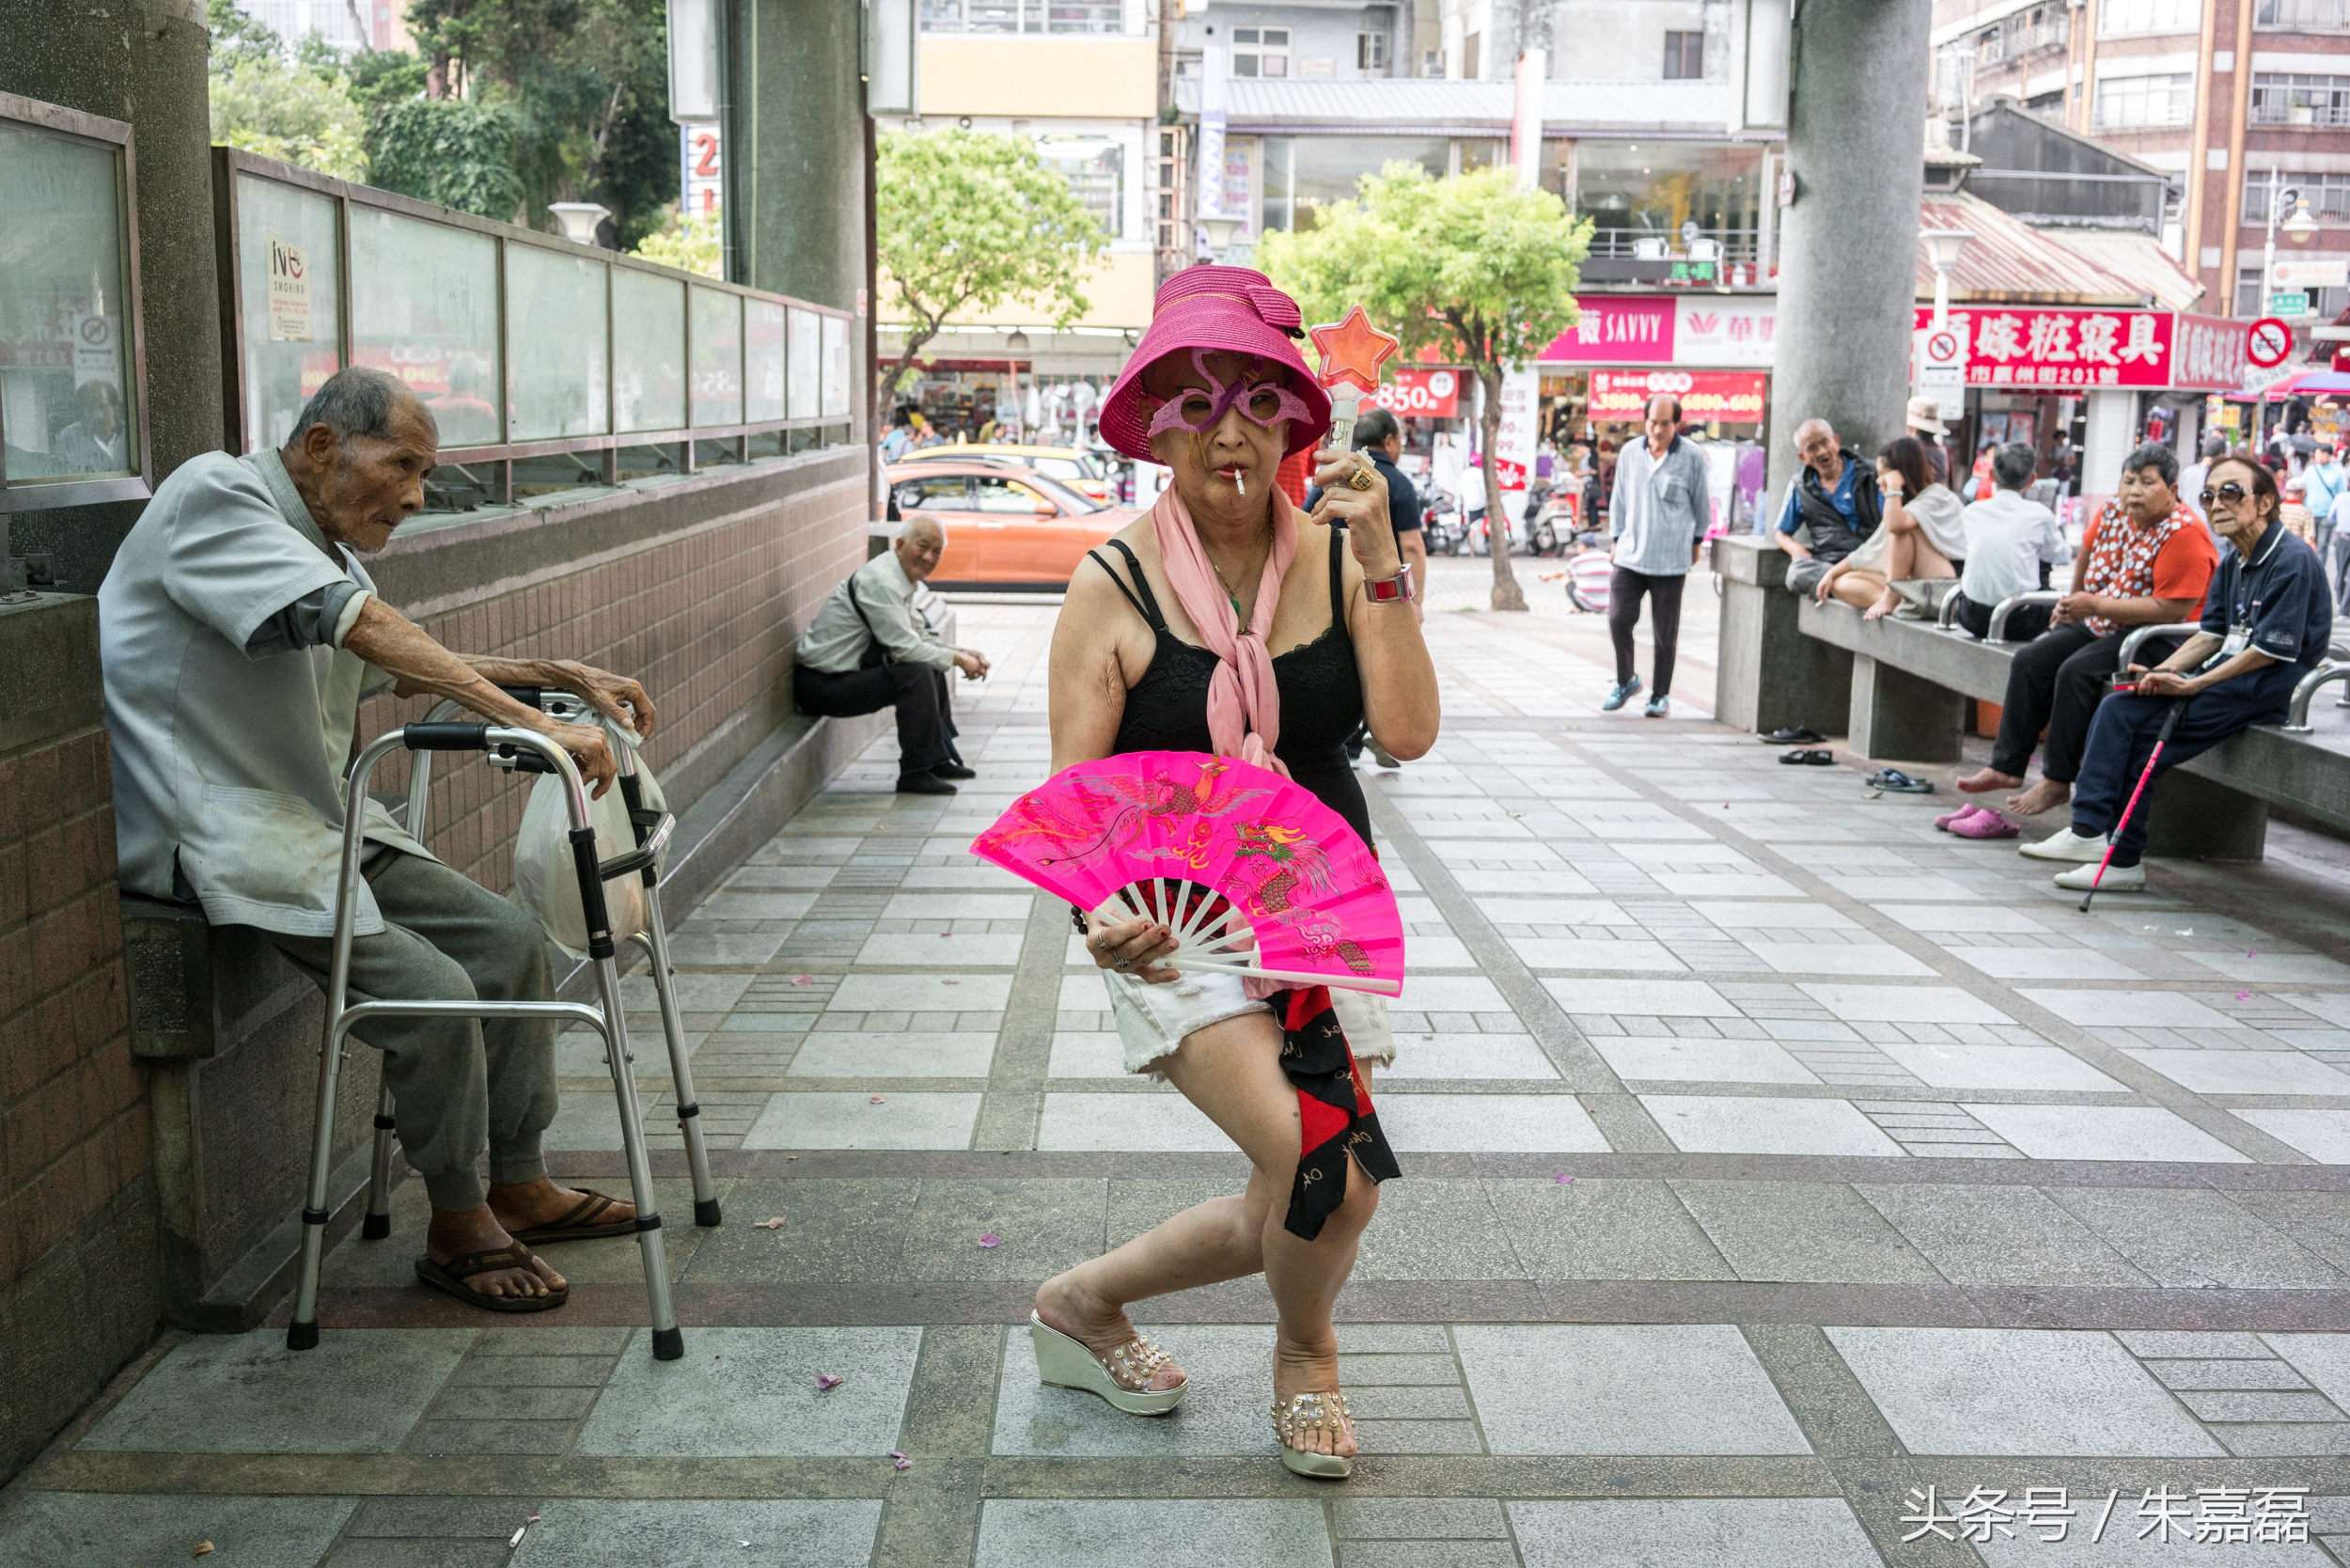 台北艋︰這里仍保留80年代模樣 60歲女性打扮妖艷干這份工作83 / 作者:123456790 / 帖子ID:162